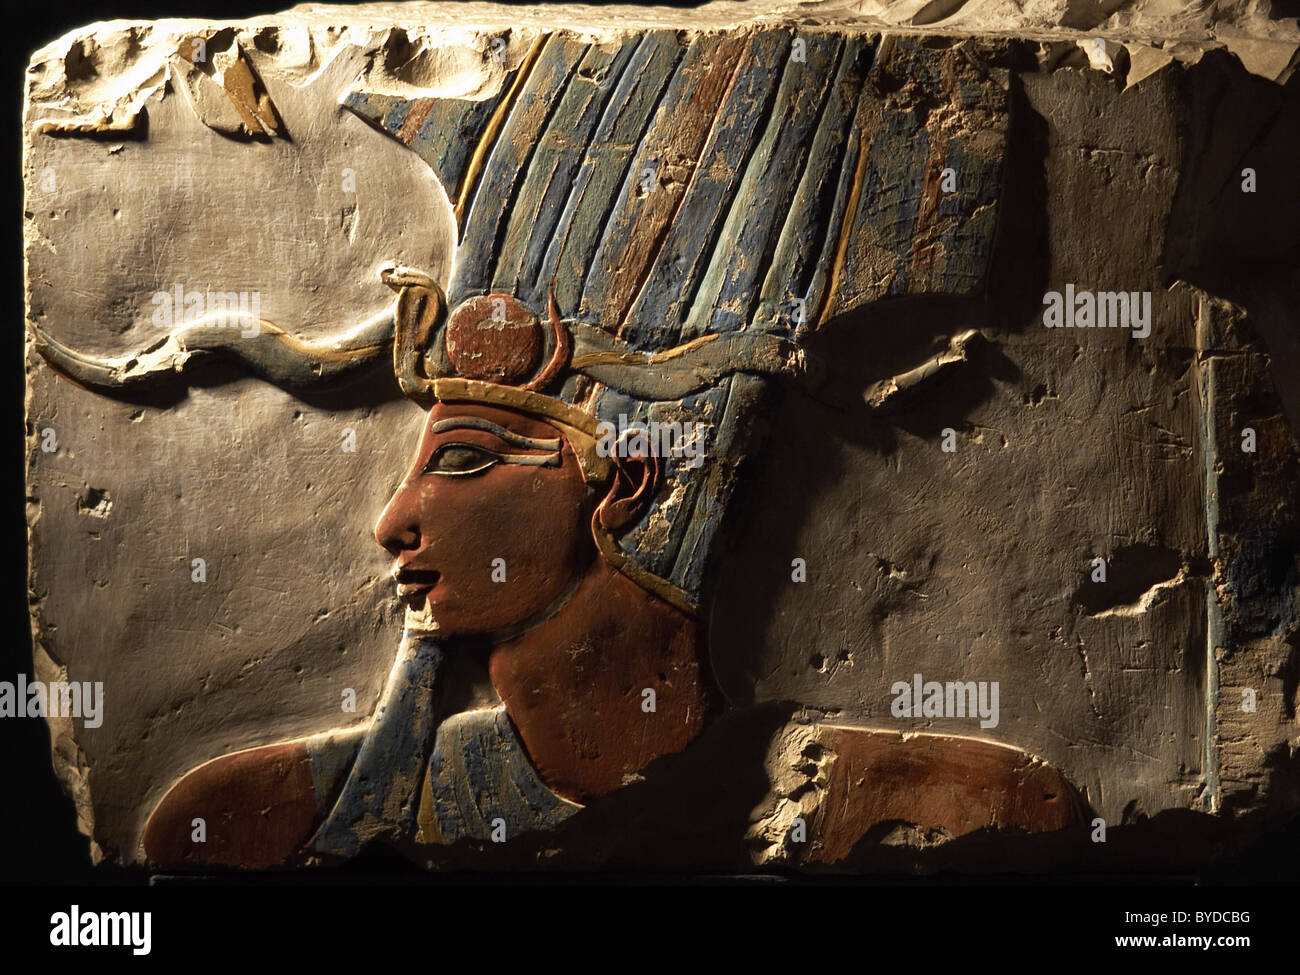 L'art égyptien de secours Polychrome Le Pharaon Thoutmosis III (h.1490-1436 avant J.-C.). Sixième pharaon de la xviiième dynastie. Banque D'Images